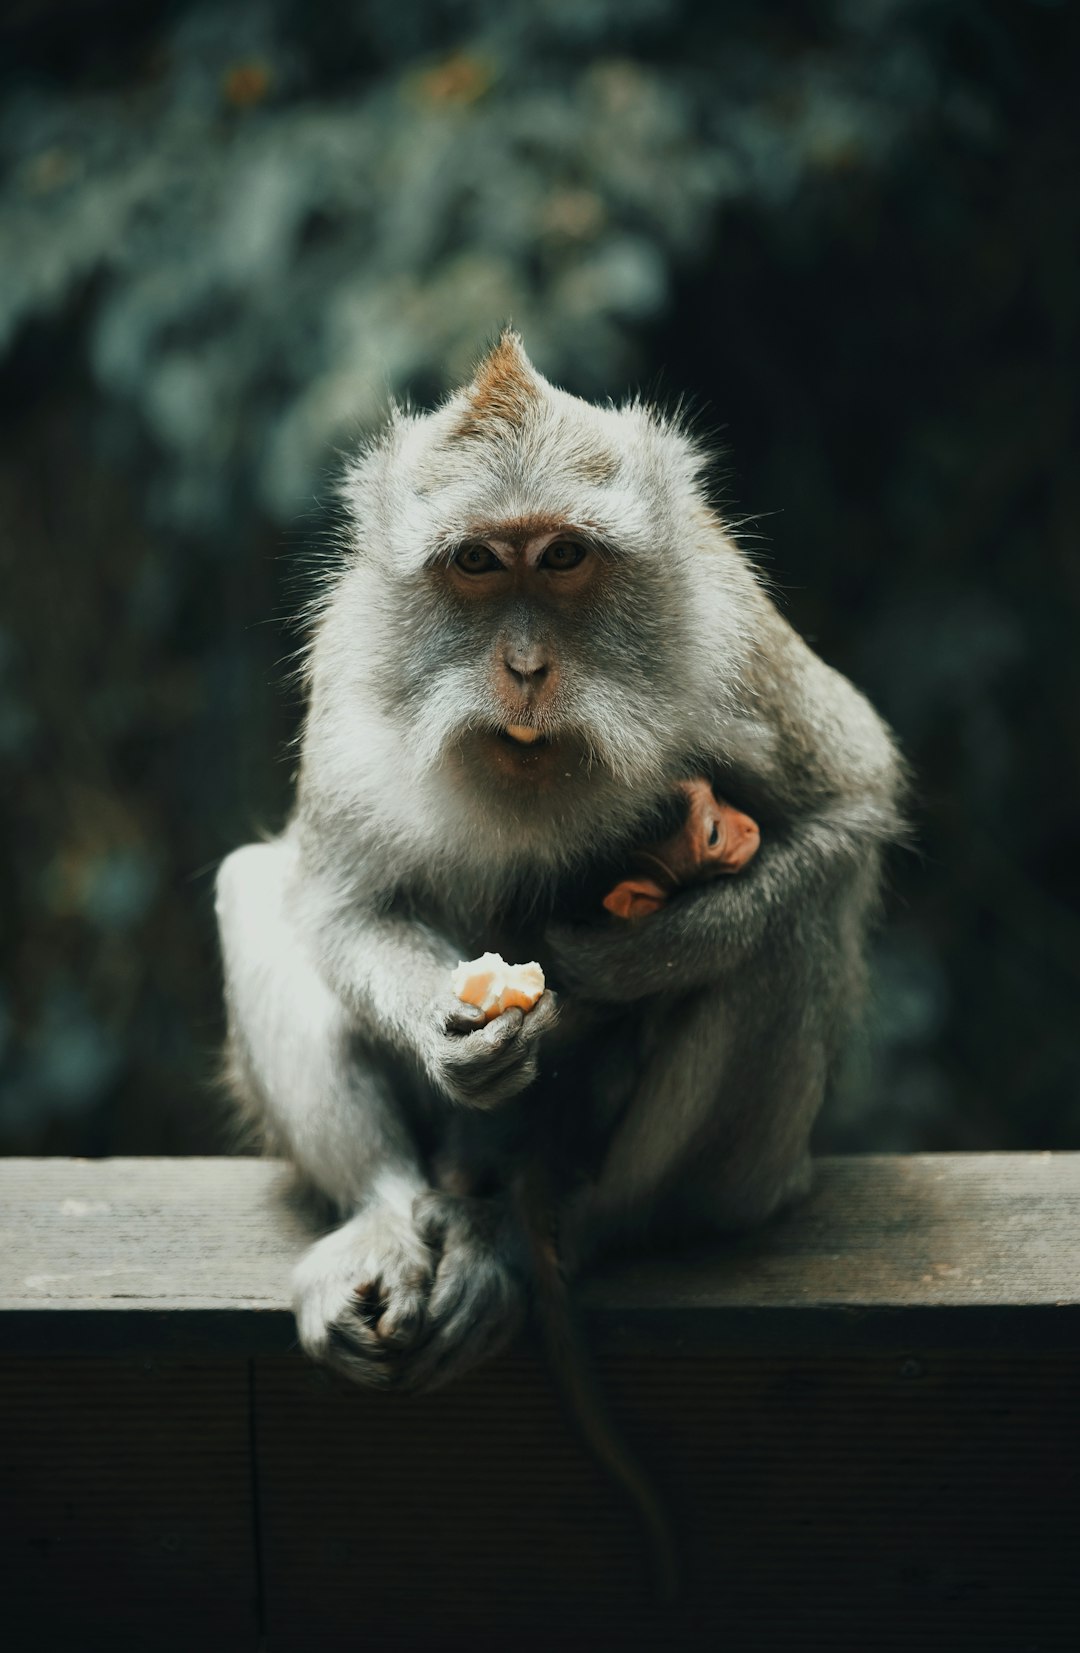 macro photography of gray baboon monkey holding food